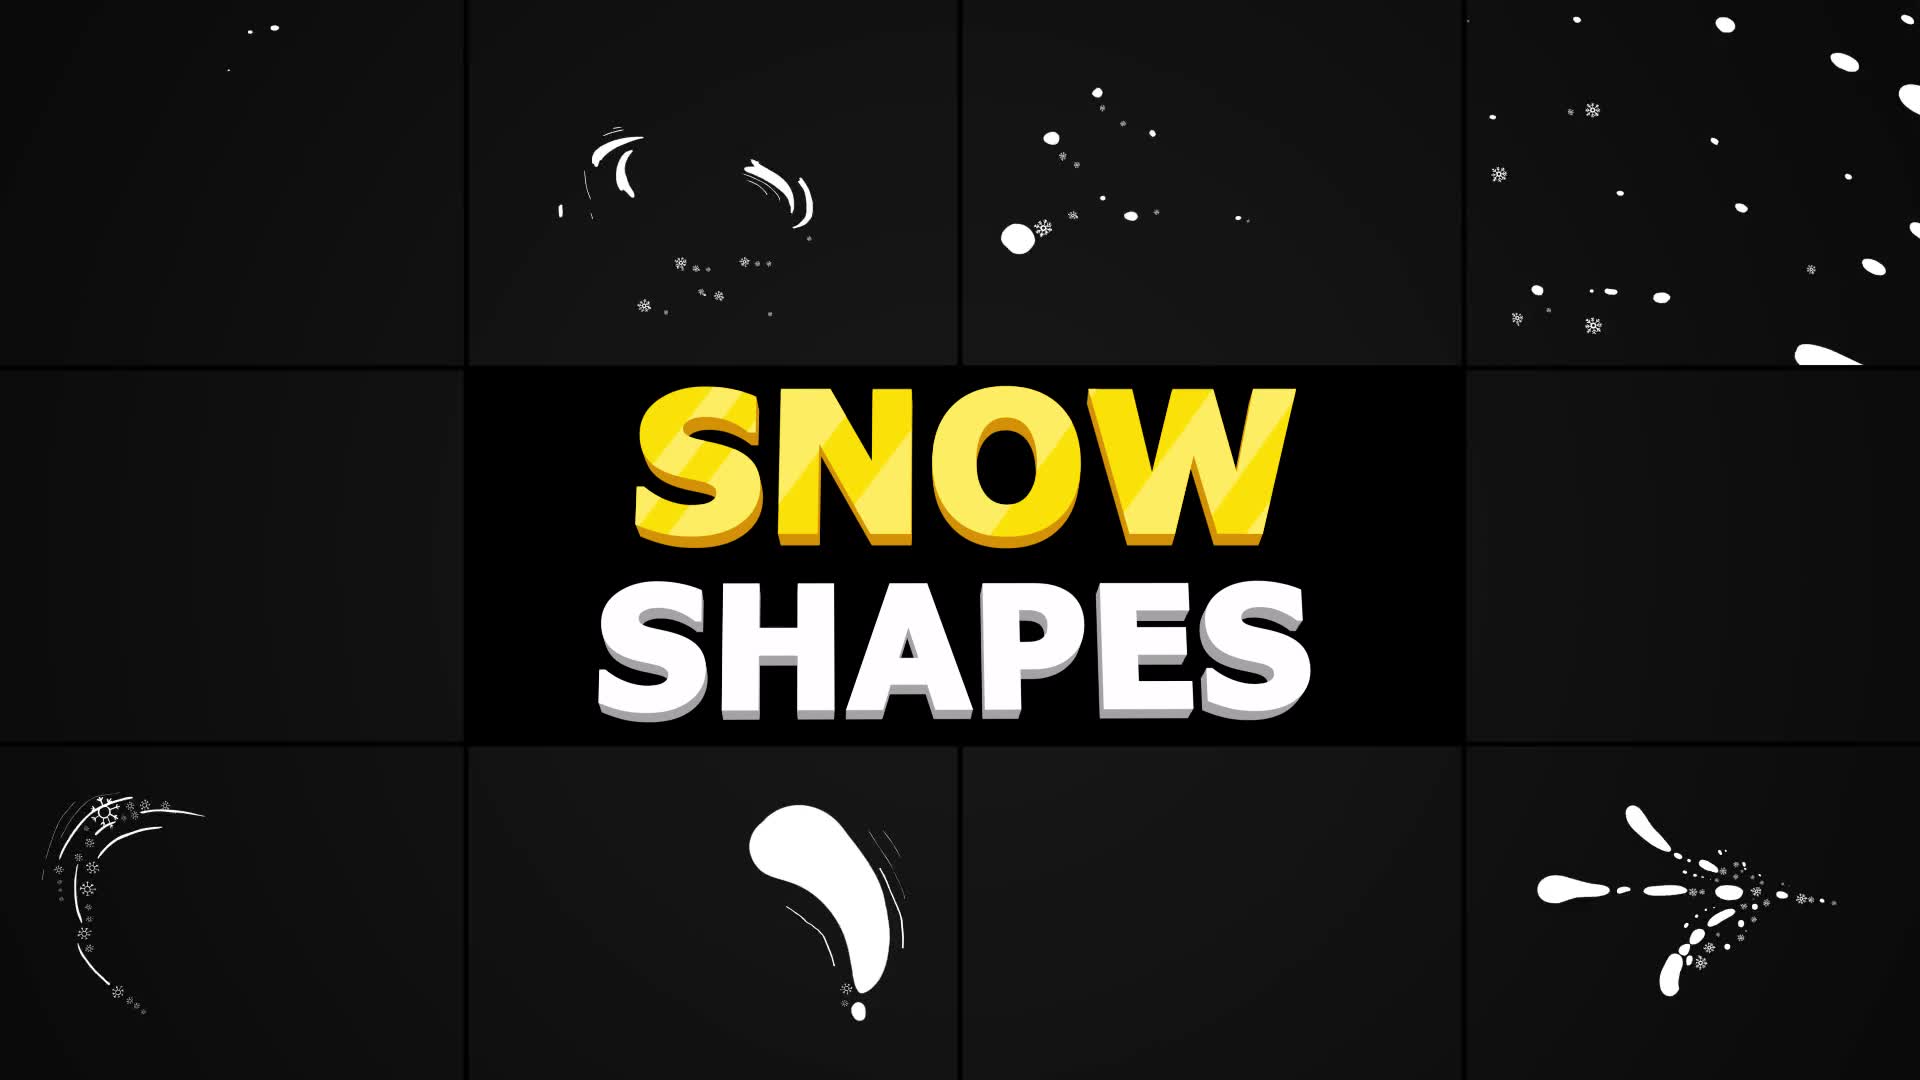 Snow Shapes | Premiere Pro Mogrt Videohive 29532741 Premiere Pro Image 2